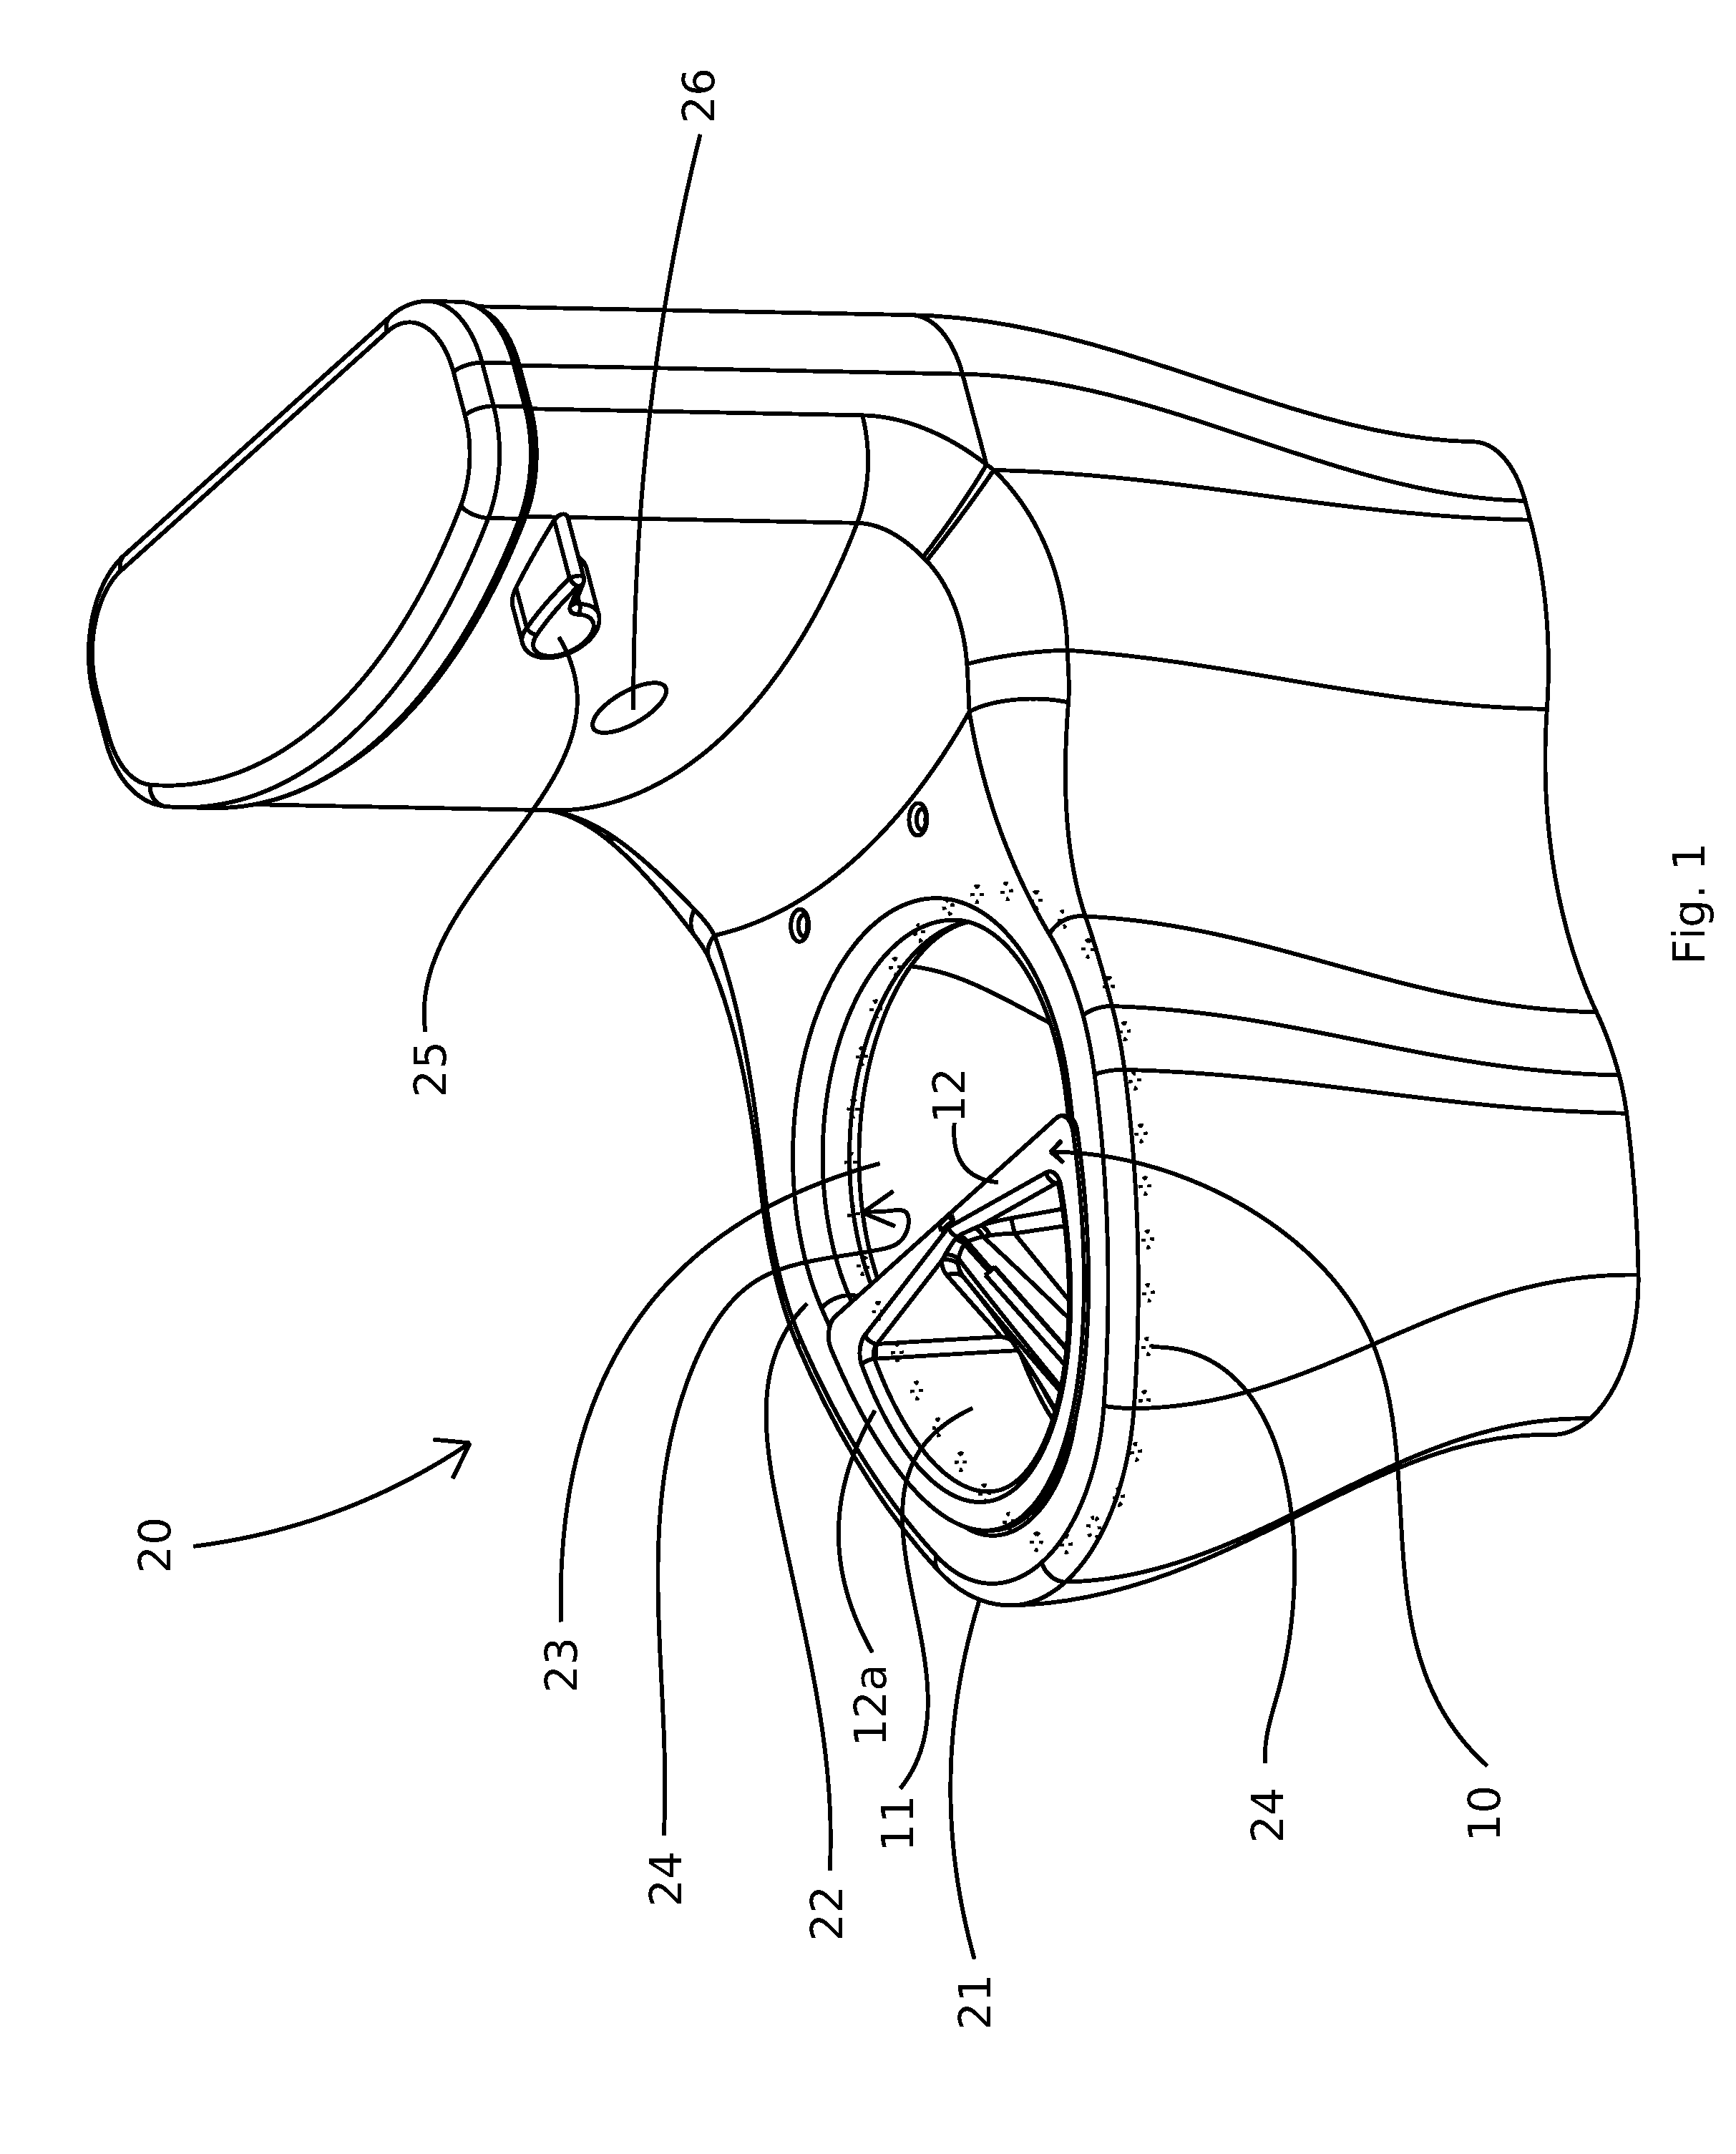 Urine specimen capture slit